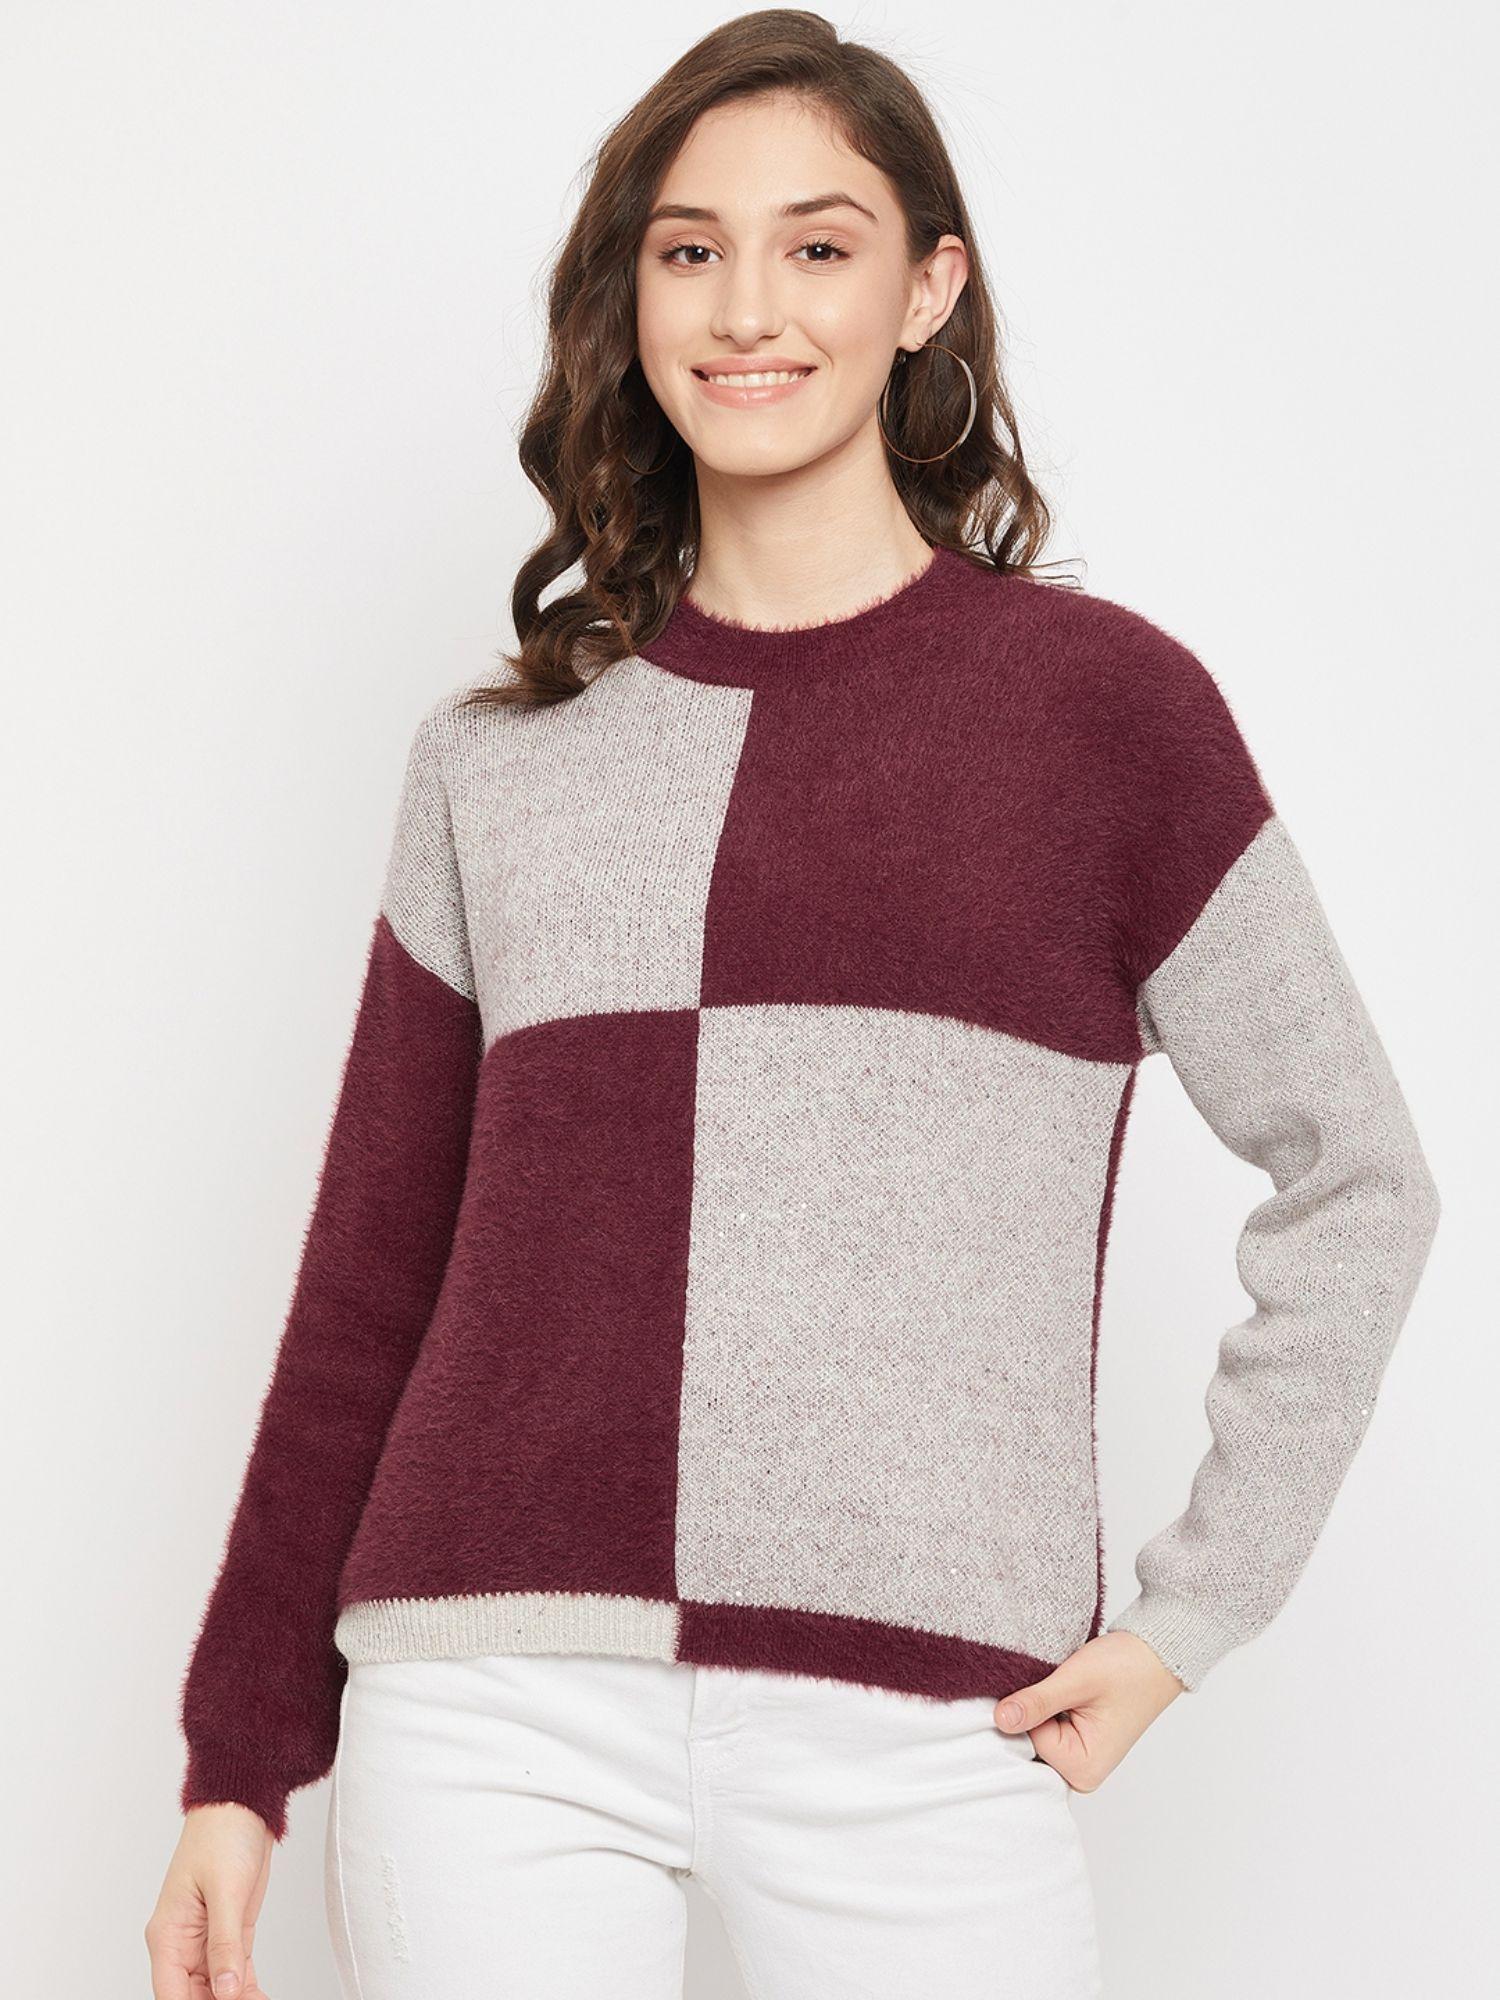 Colorblock Wine Sweater